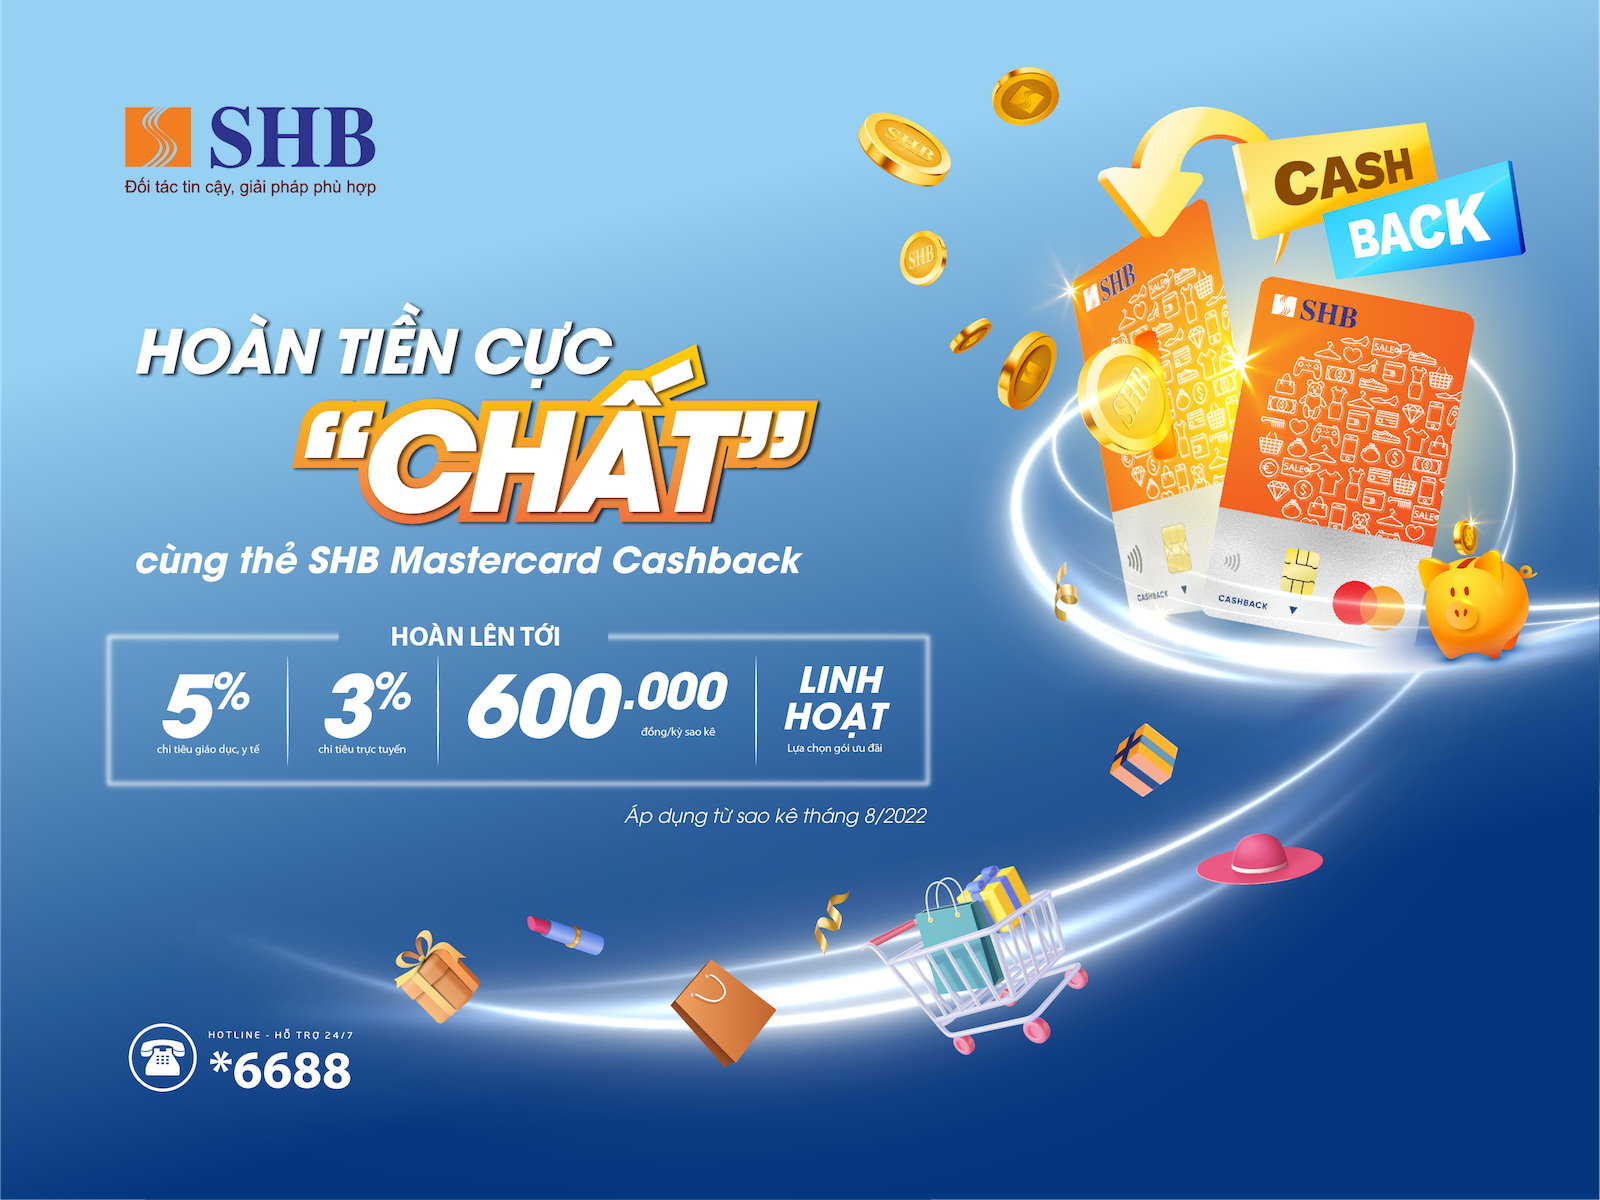 shb-mc-cashback-screensaver-1658735134.png